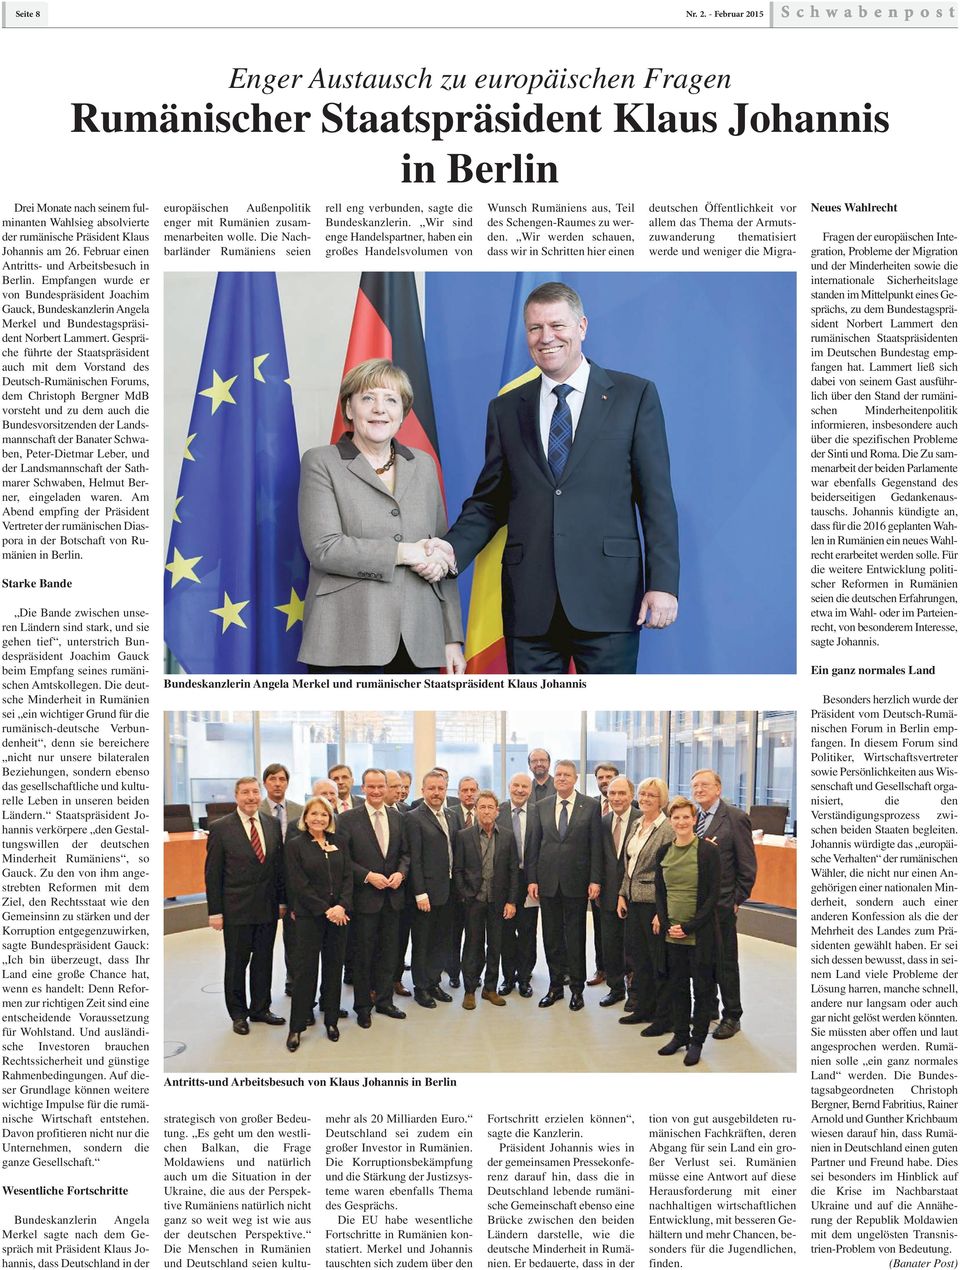 Februar einen Antritts- und Arbeitsbesuch in Berlin. Empfangen wurde er von Bundespräsident Joachim Gauck, Bundeskanzlerin Angela Merkel und Bundestagspräsident Norbert Lammert.